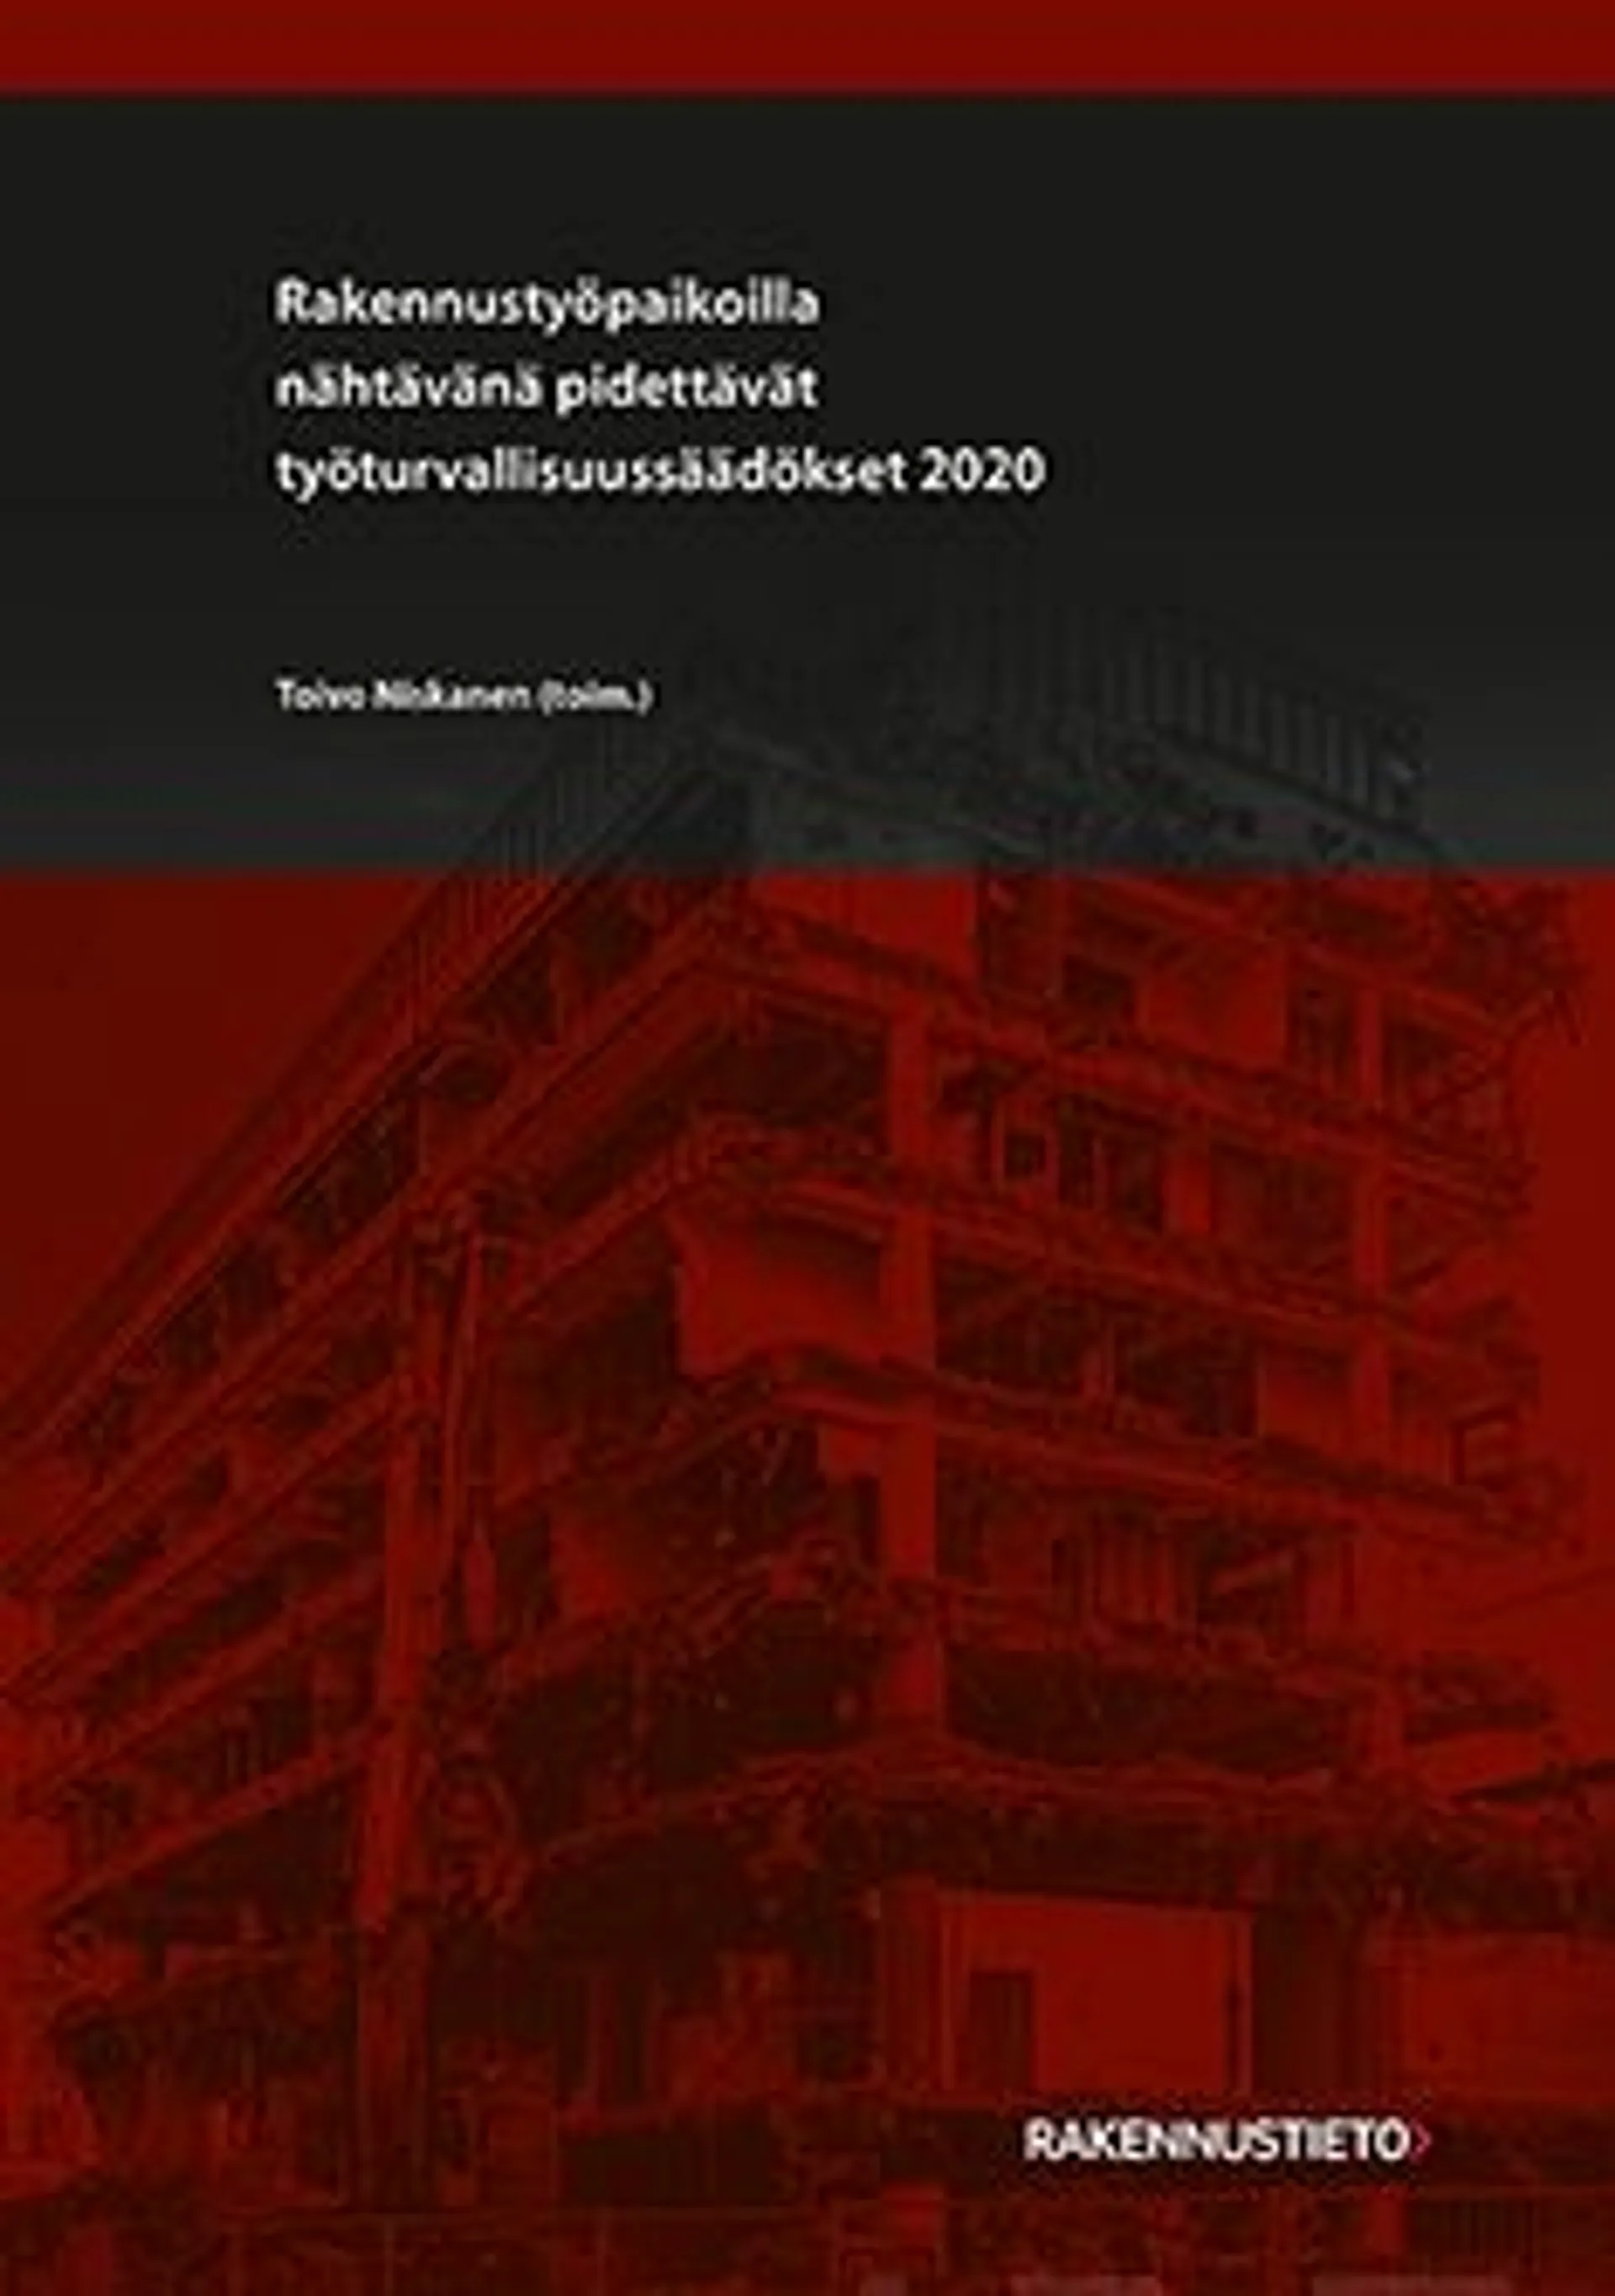 Rakennustyöpaikoilla nähtävänä pidettävät työturvallisuussäädökset 2020 - "Punamusta"